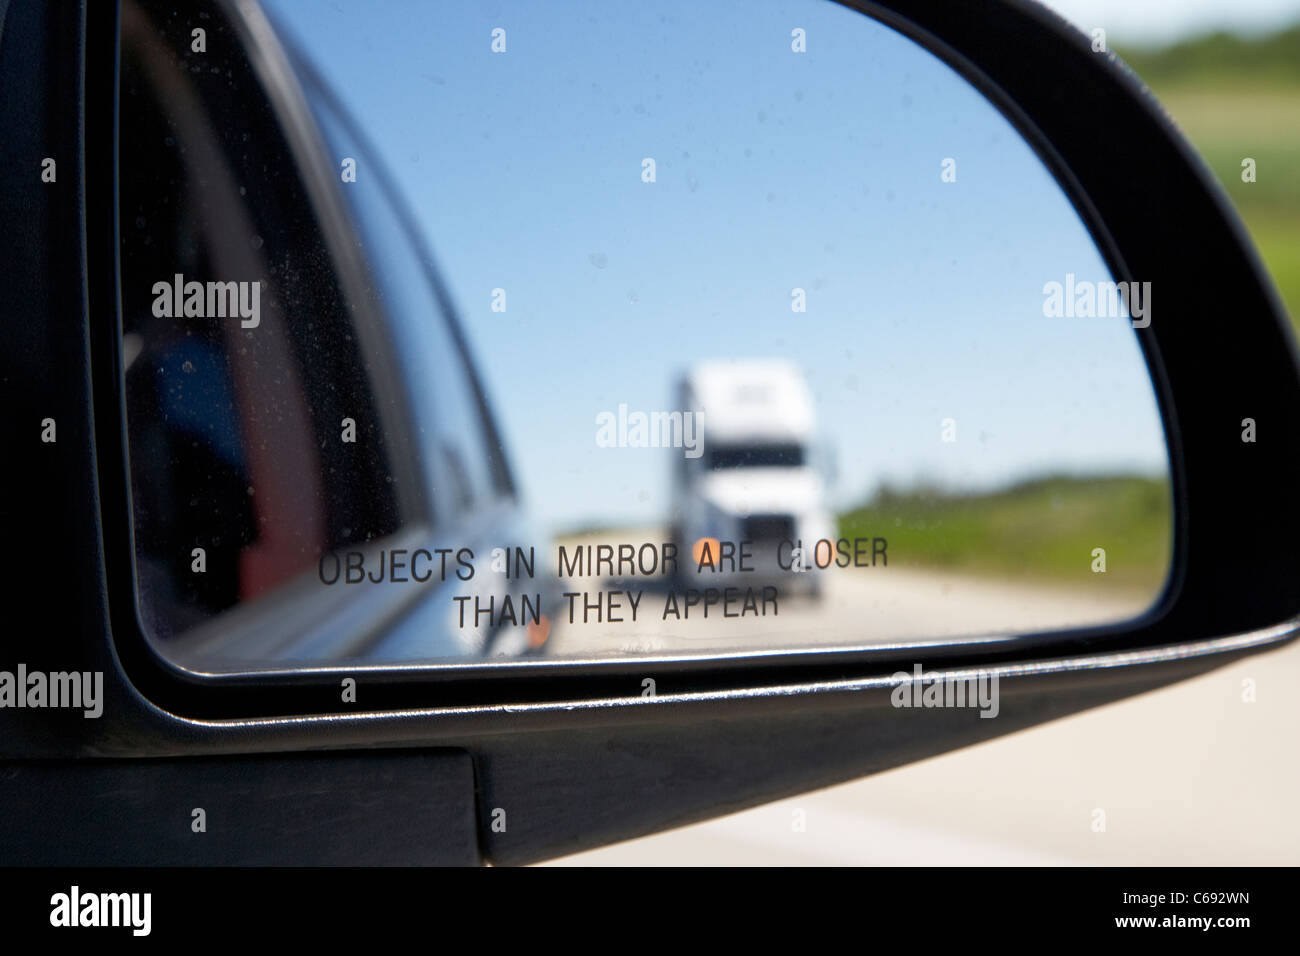 Objekte in Spiegel sind näher, als sie im Auto Außenspiegel Außenspiegel  erscheinen mit Lkw auf der Autobahn Kanada Stockfotografie - Alamy